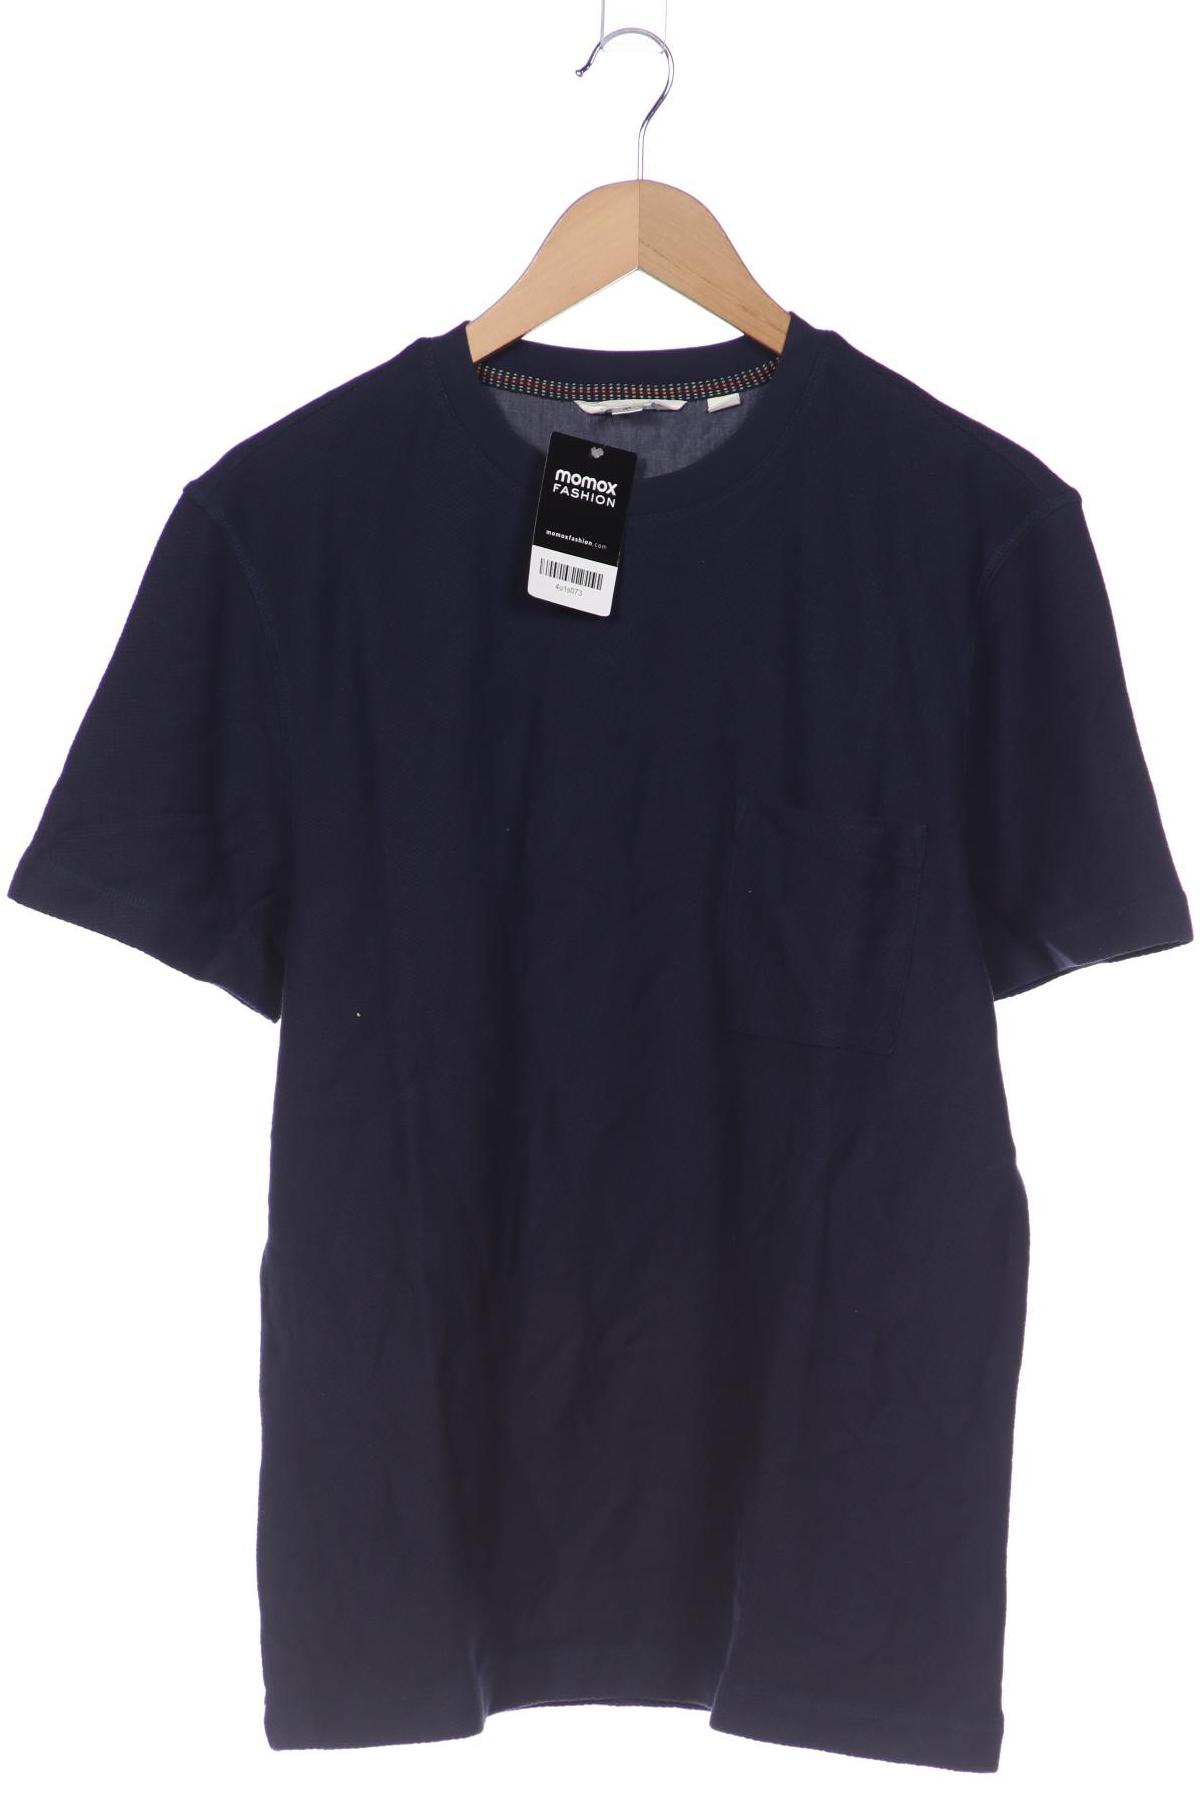 White Stuff Herren T-Shirt, marineblau, Gr. 48 von White Stuff